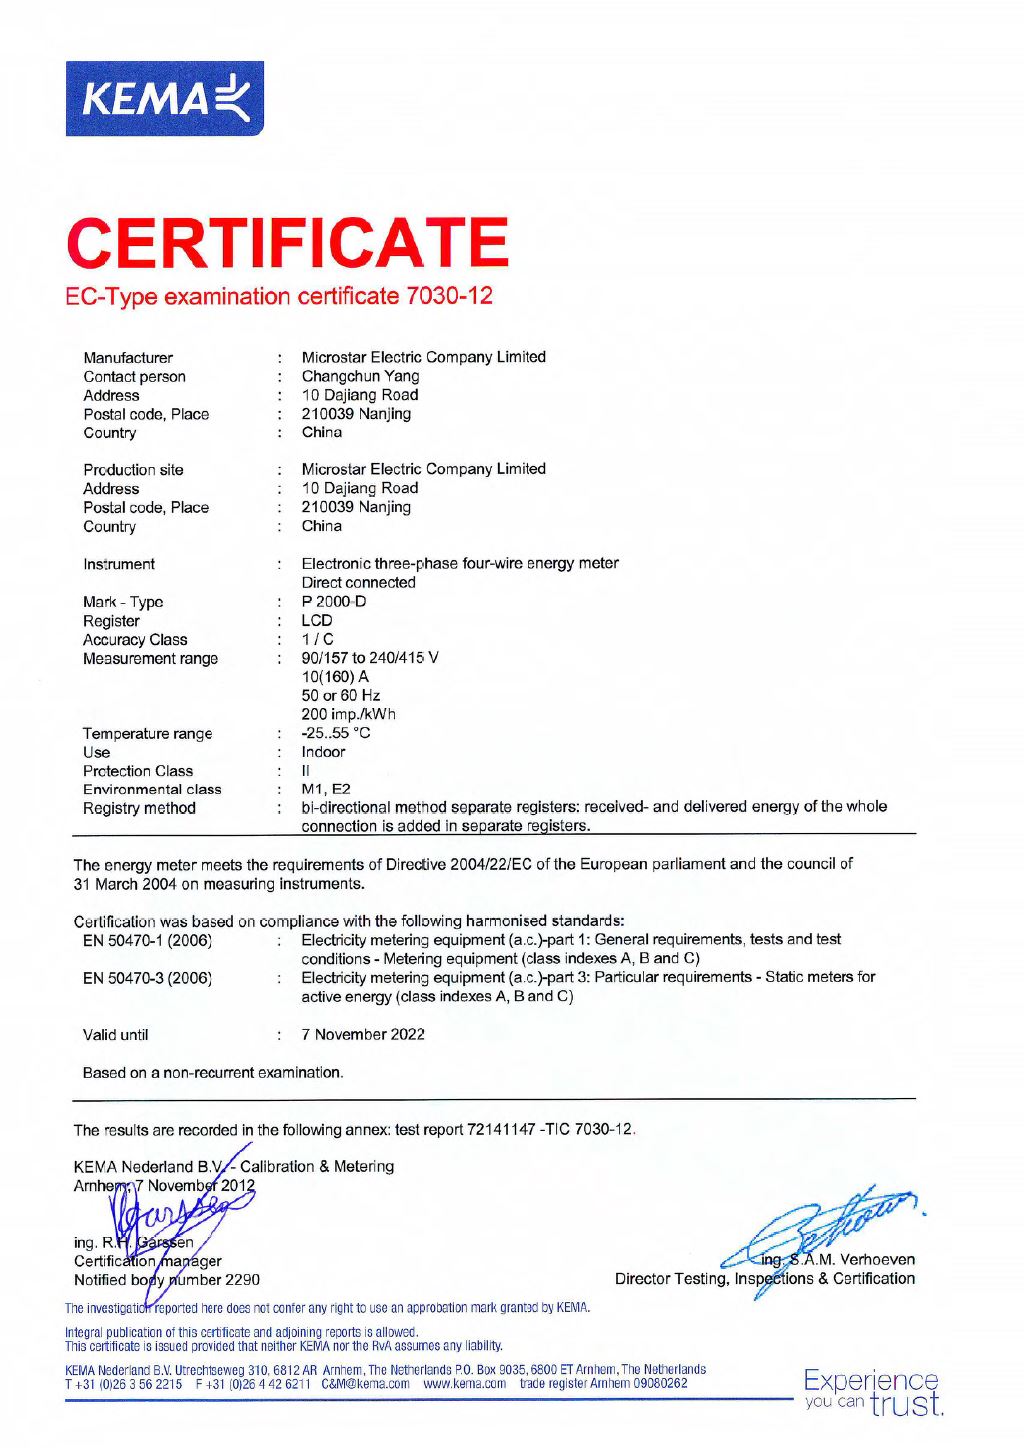 P2000-D EN50470 Class C Certificate (MID Module B)